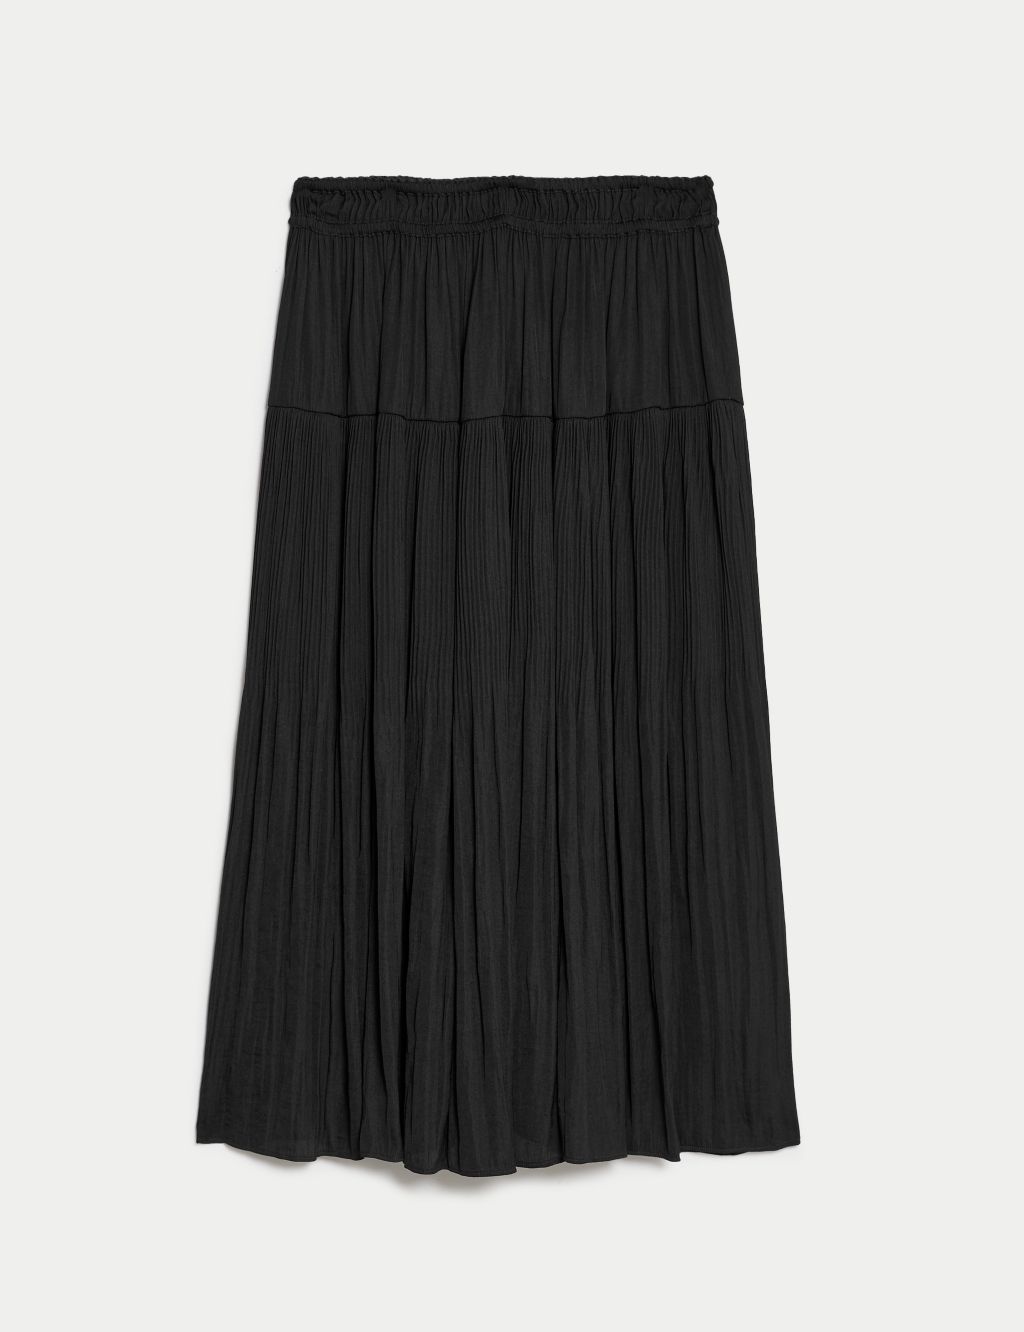 Satin Plisse Midi Pleated Skirt image 2